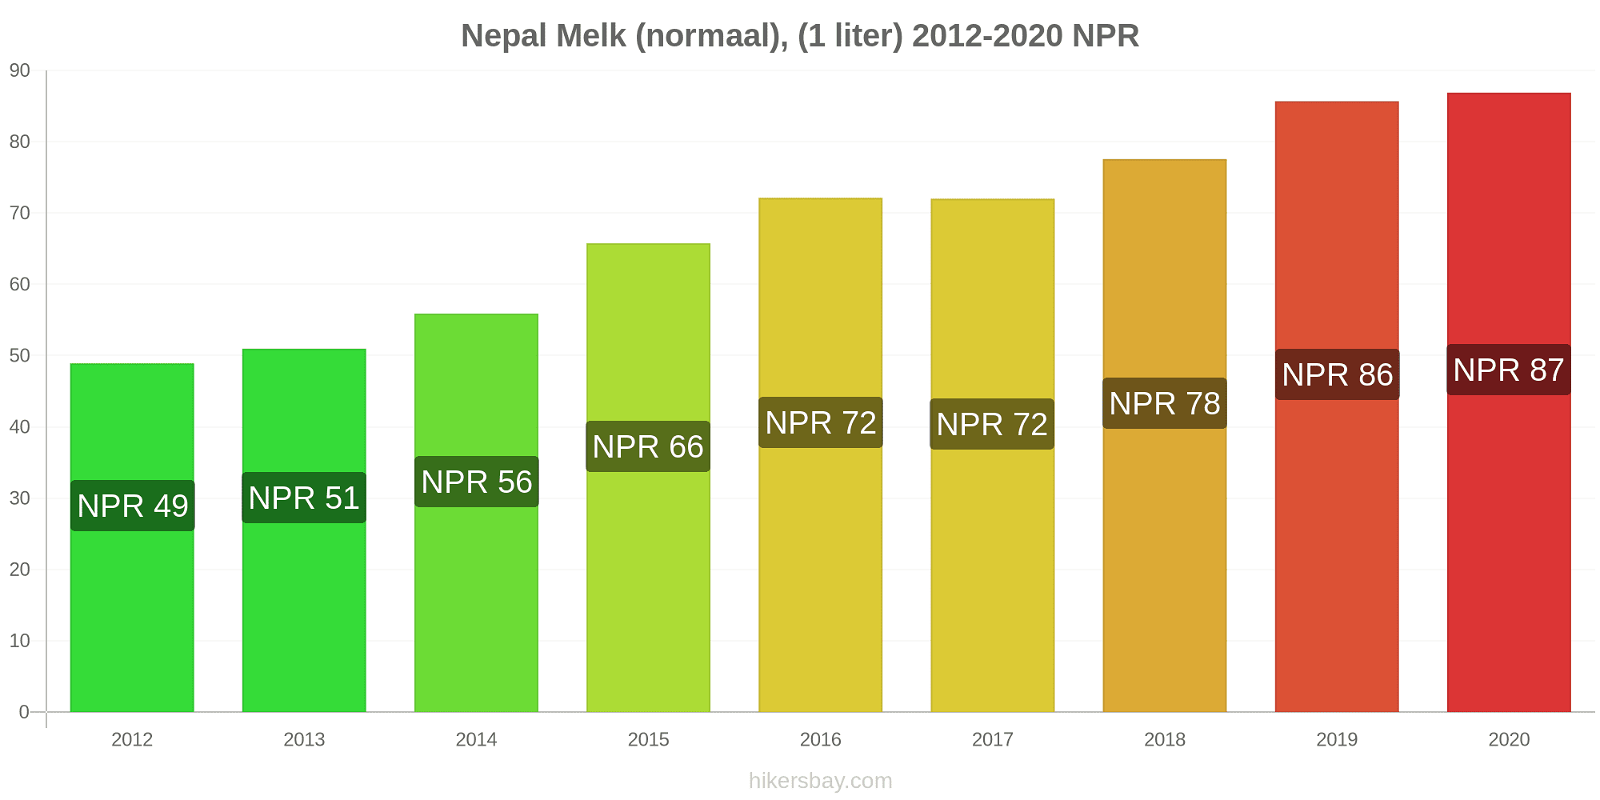 Nepal prijswijzigingen Melk (regelmatige), (1 liter) hikersbay.com